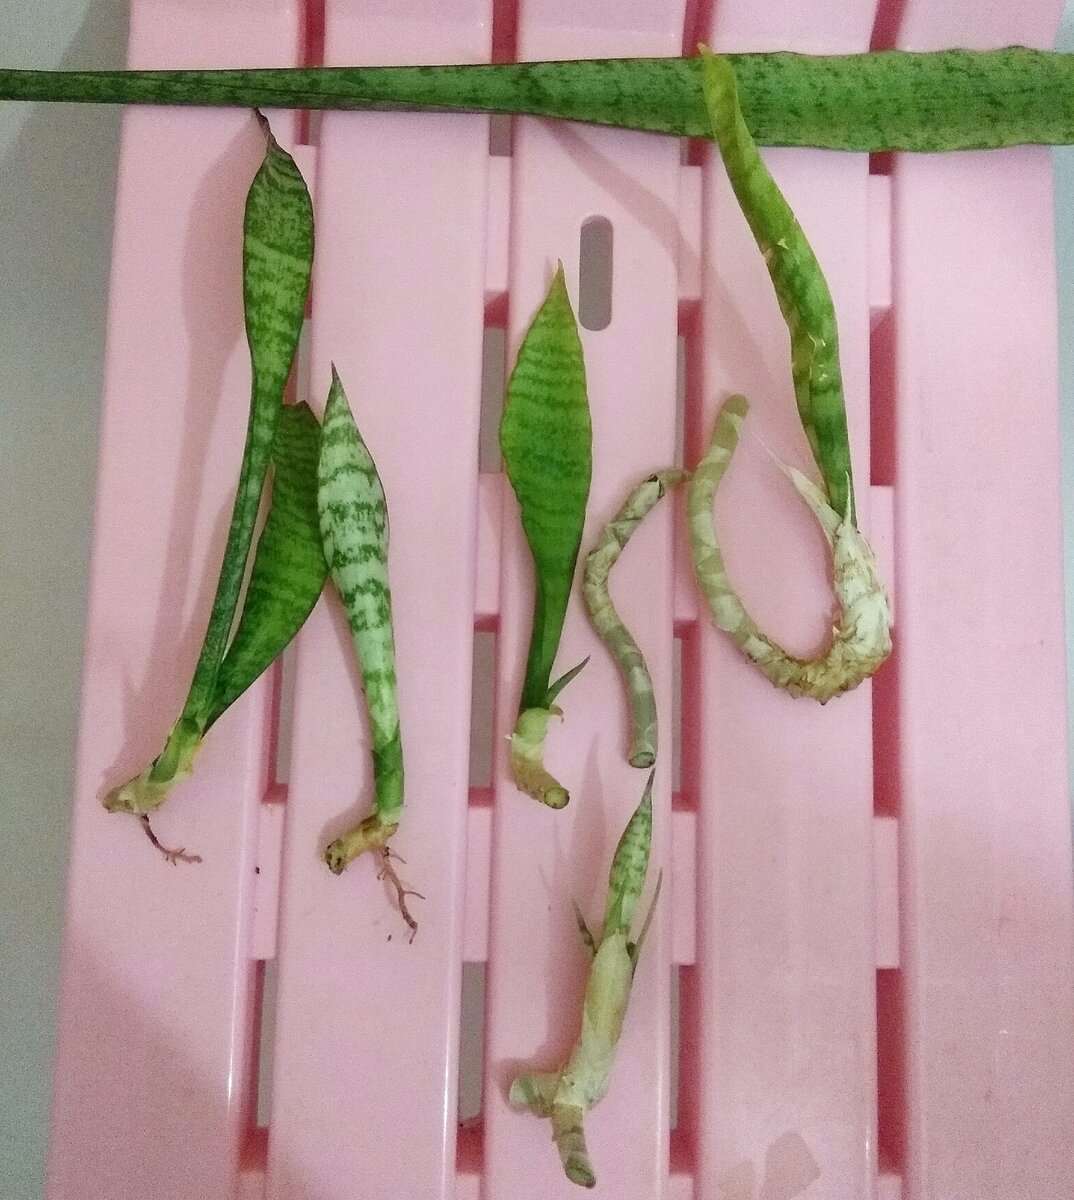 Размножение сансевиерии листом фото пошаговый